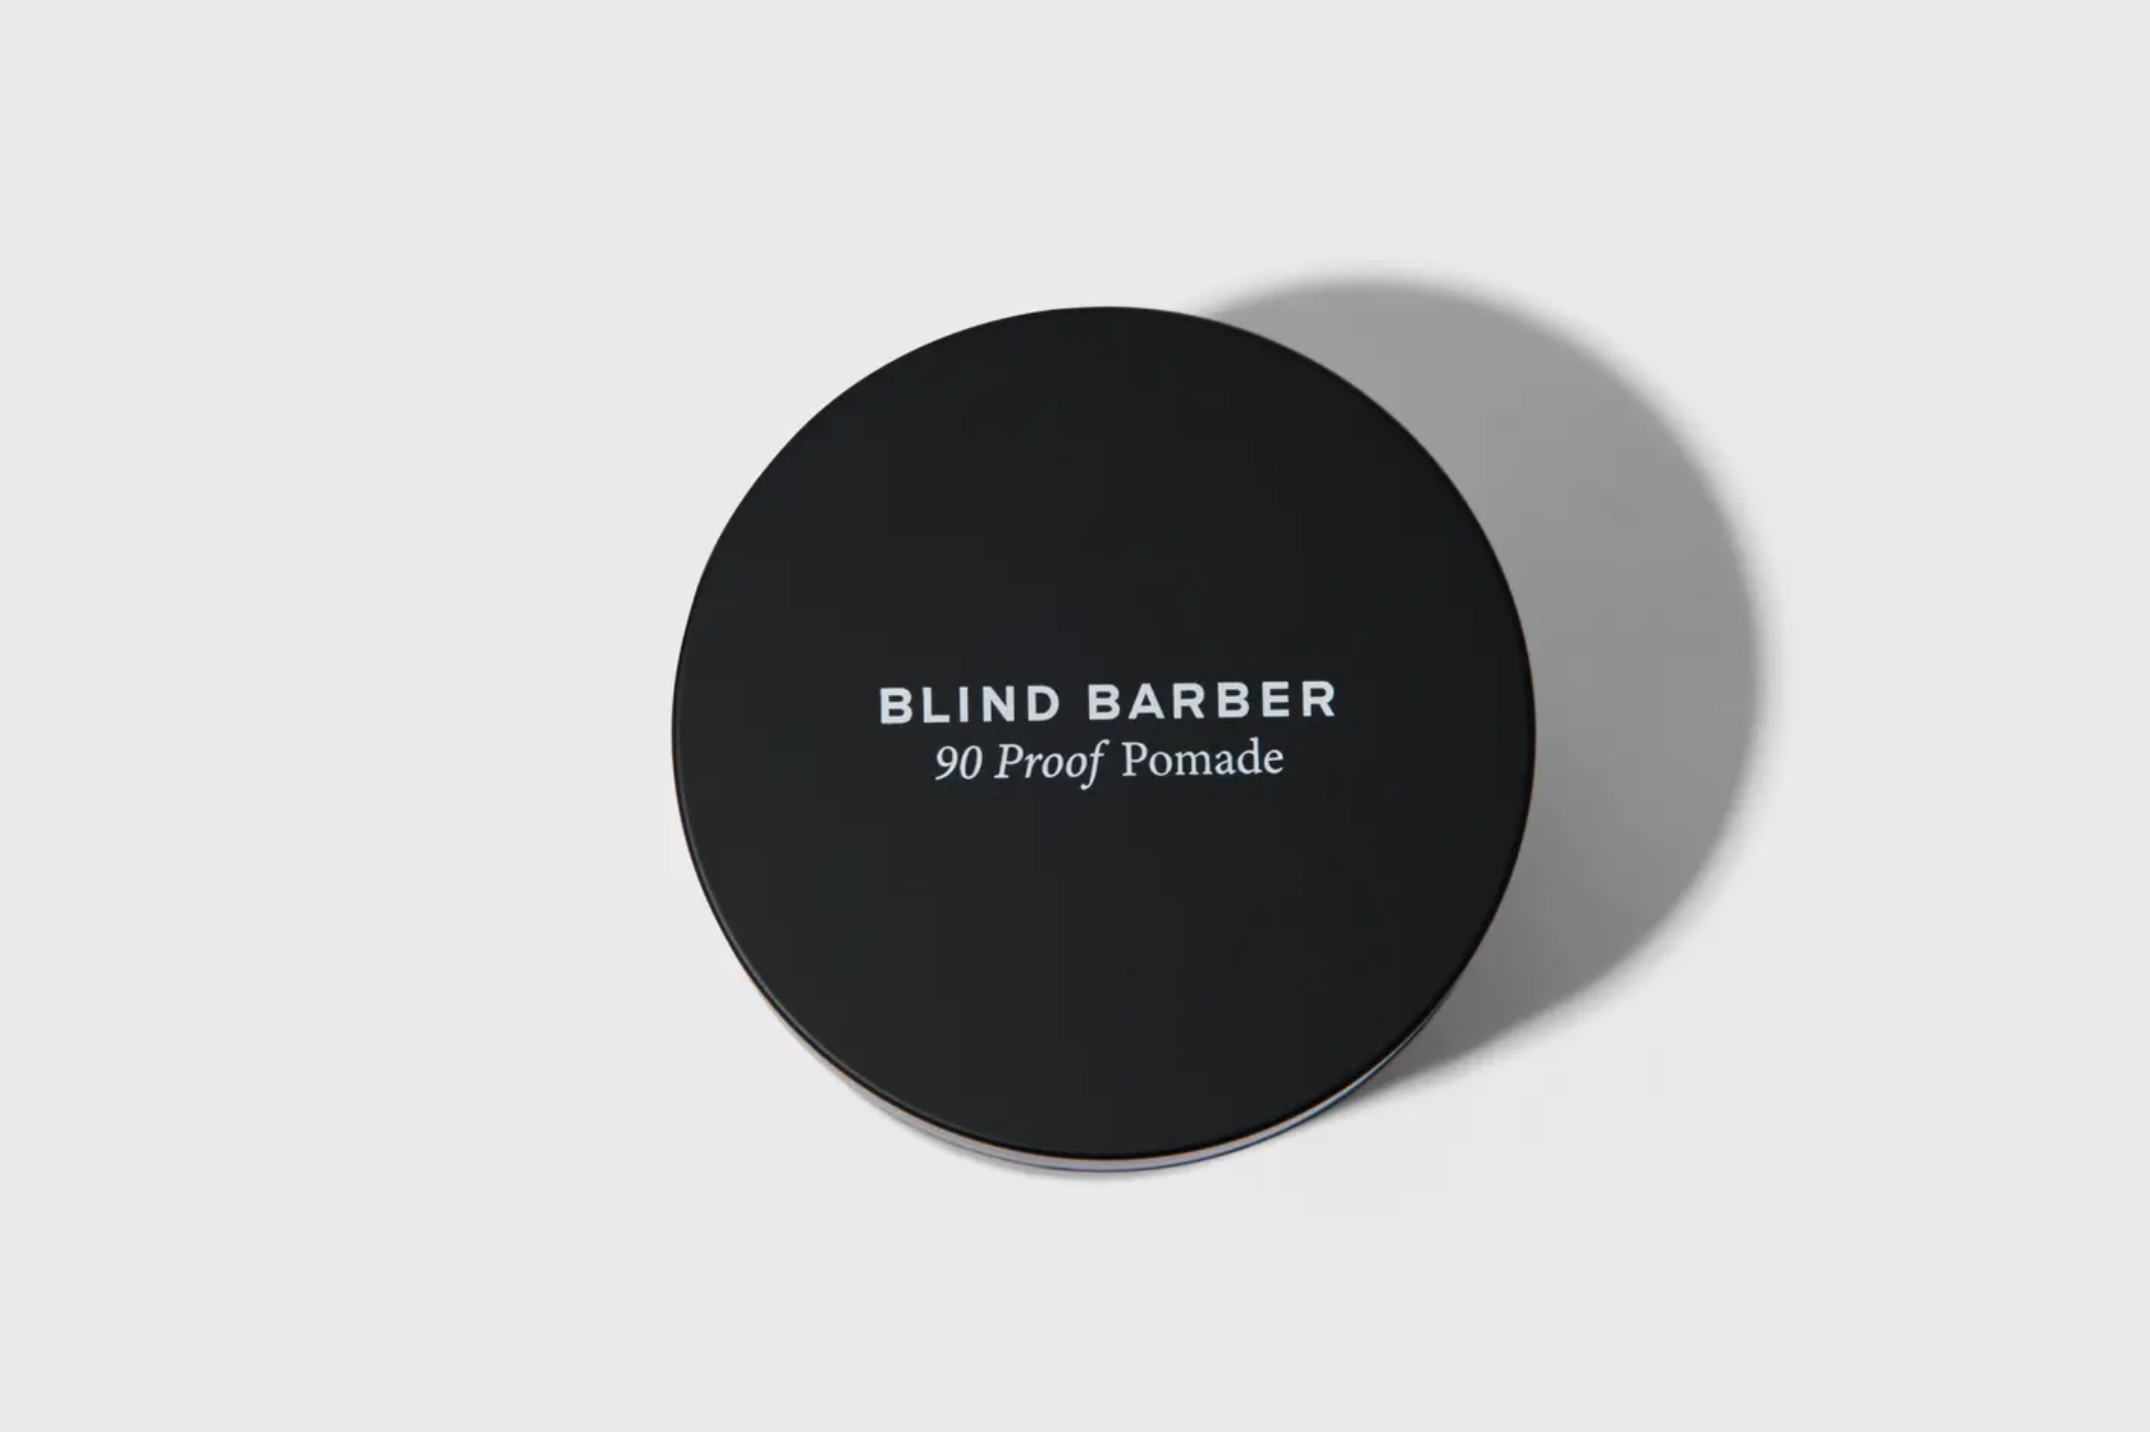 Blind Barber 90 Proof Pomade